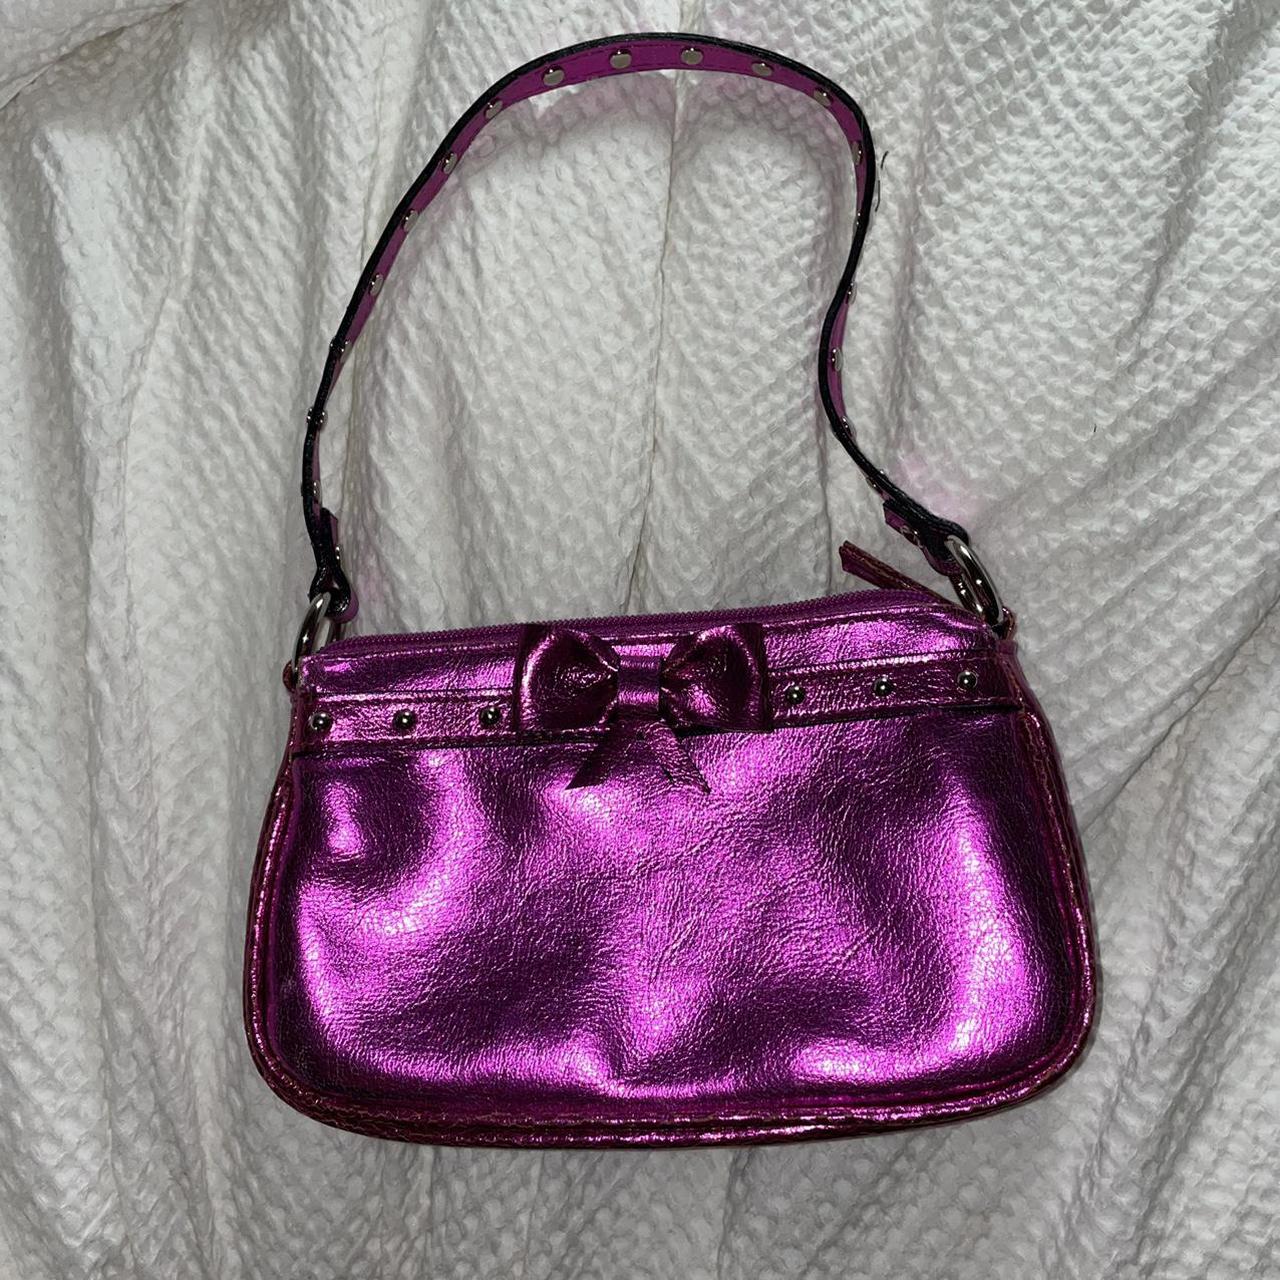 Vintage metallic y2k mini shoulder bag in this... - Depop